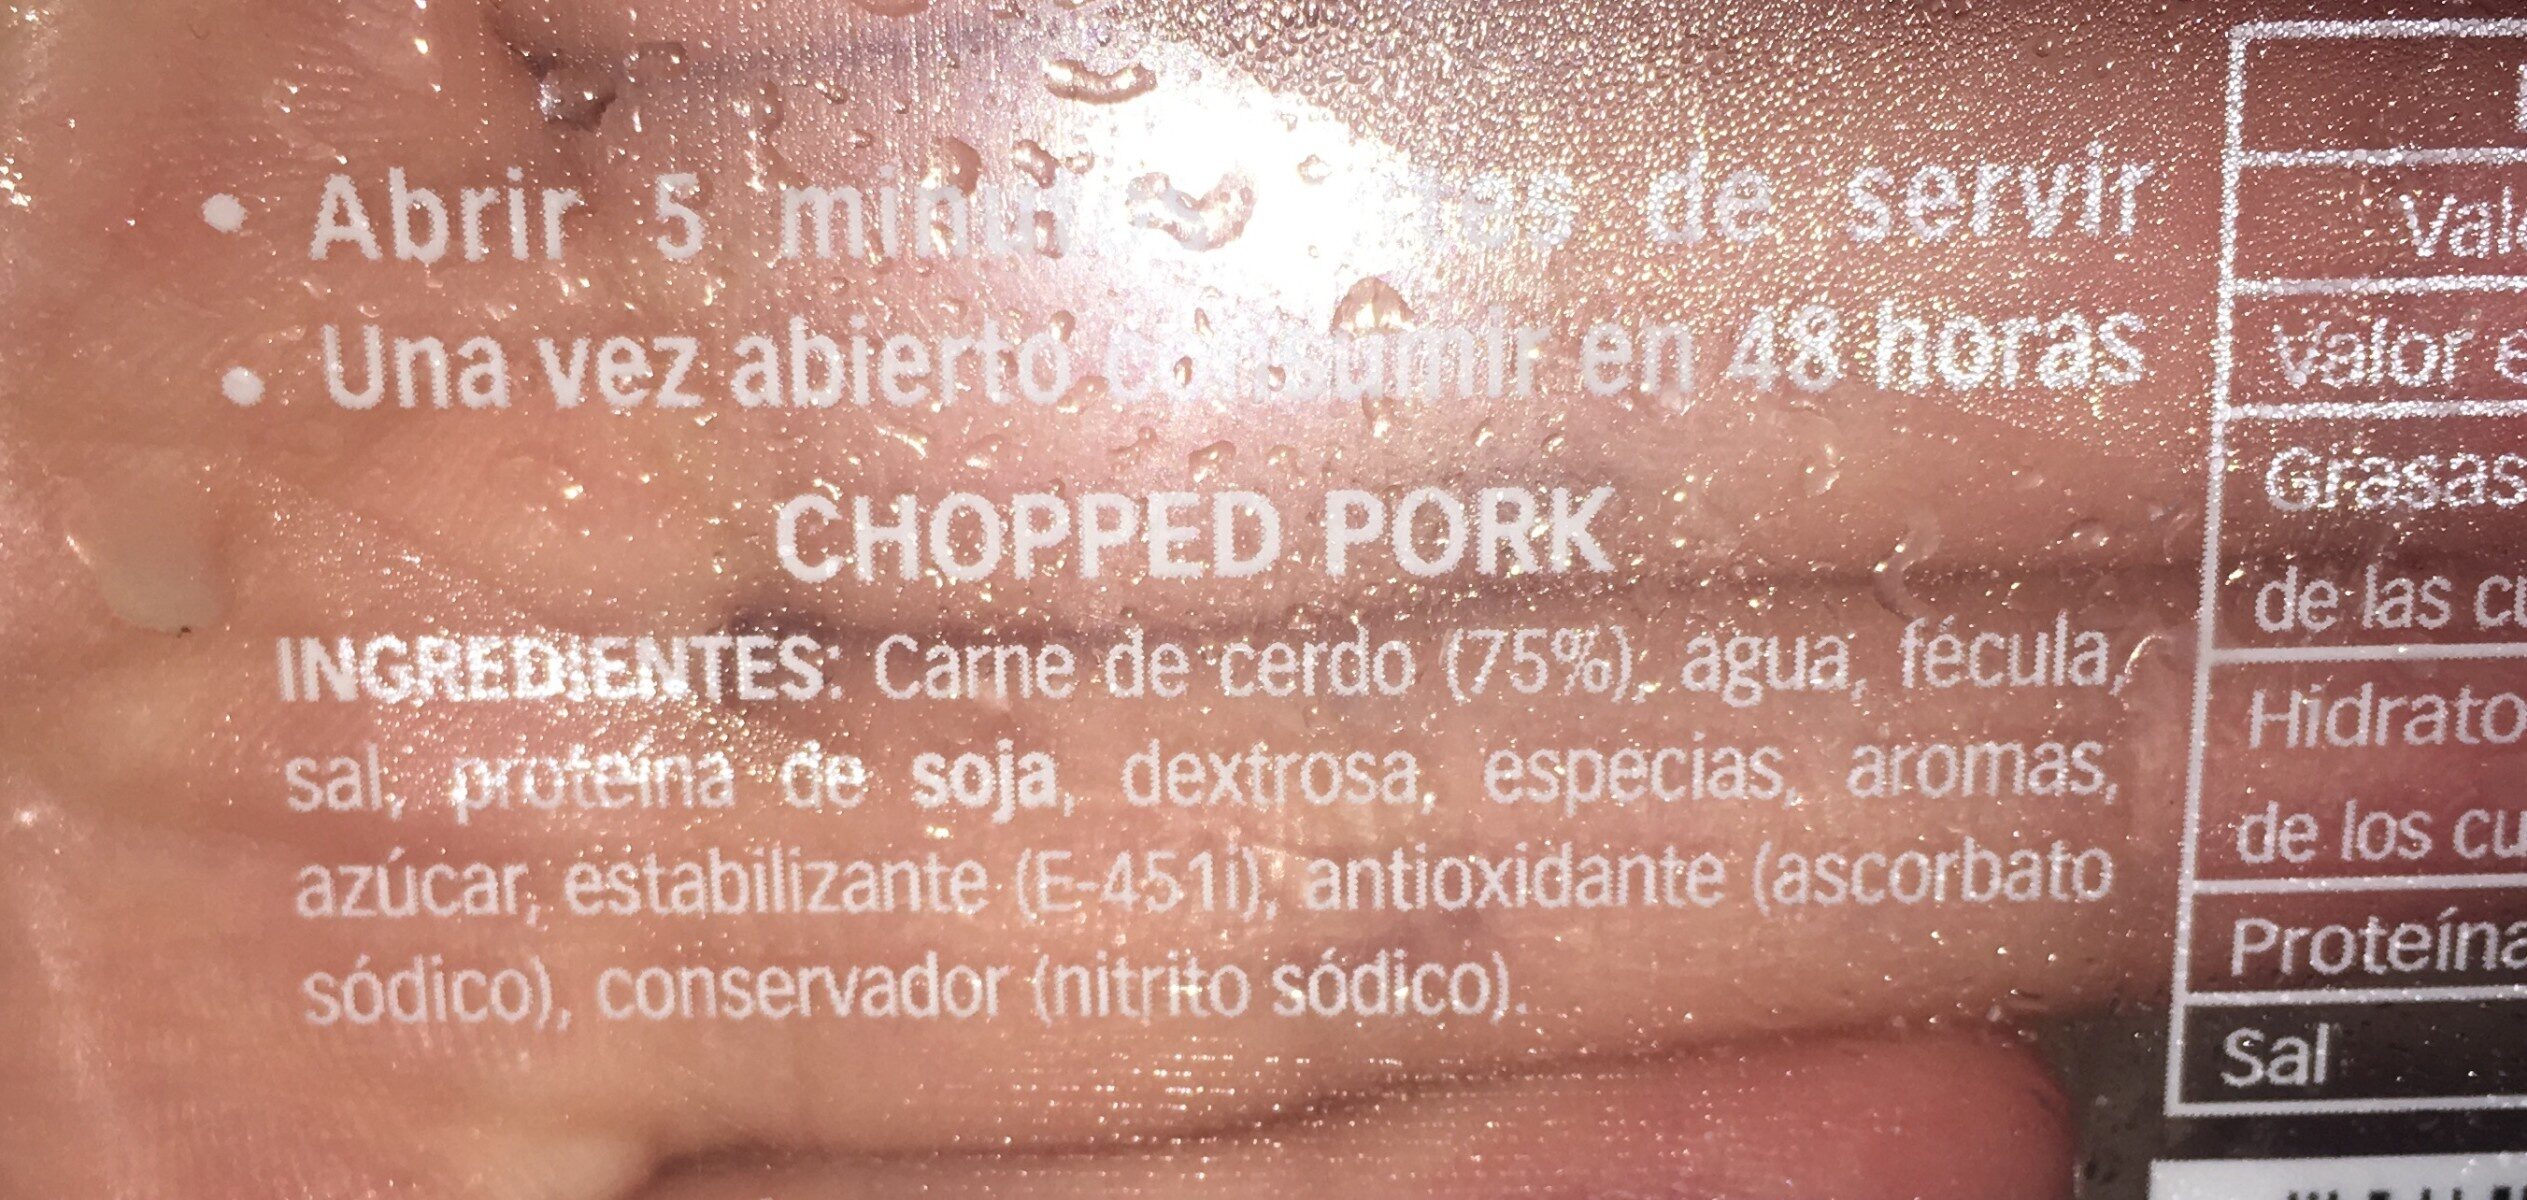 Chopped pork - Ingredients - es